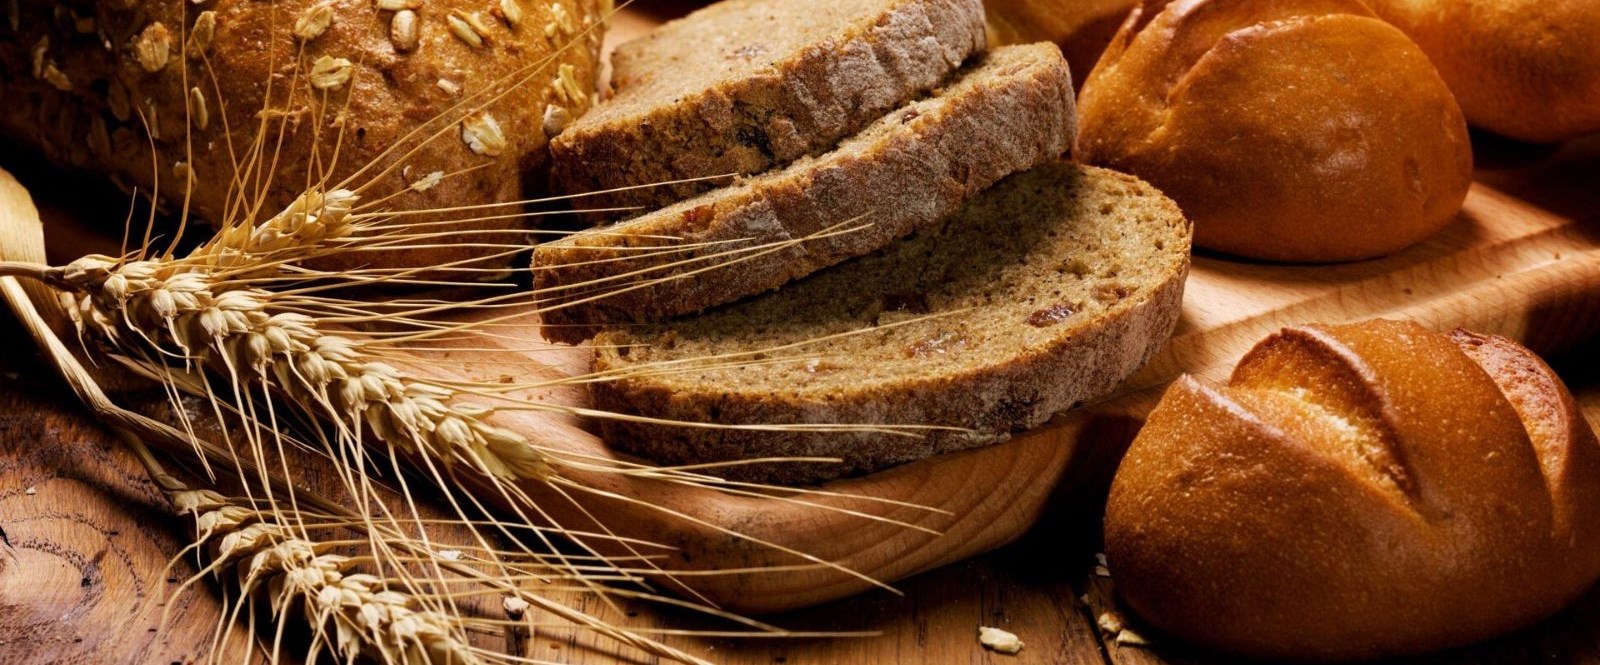 Onkoloji Uzmanı Yavuz Dizdar: Kaliteli ekmek obezite yapmaz